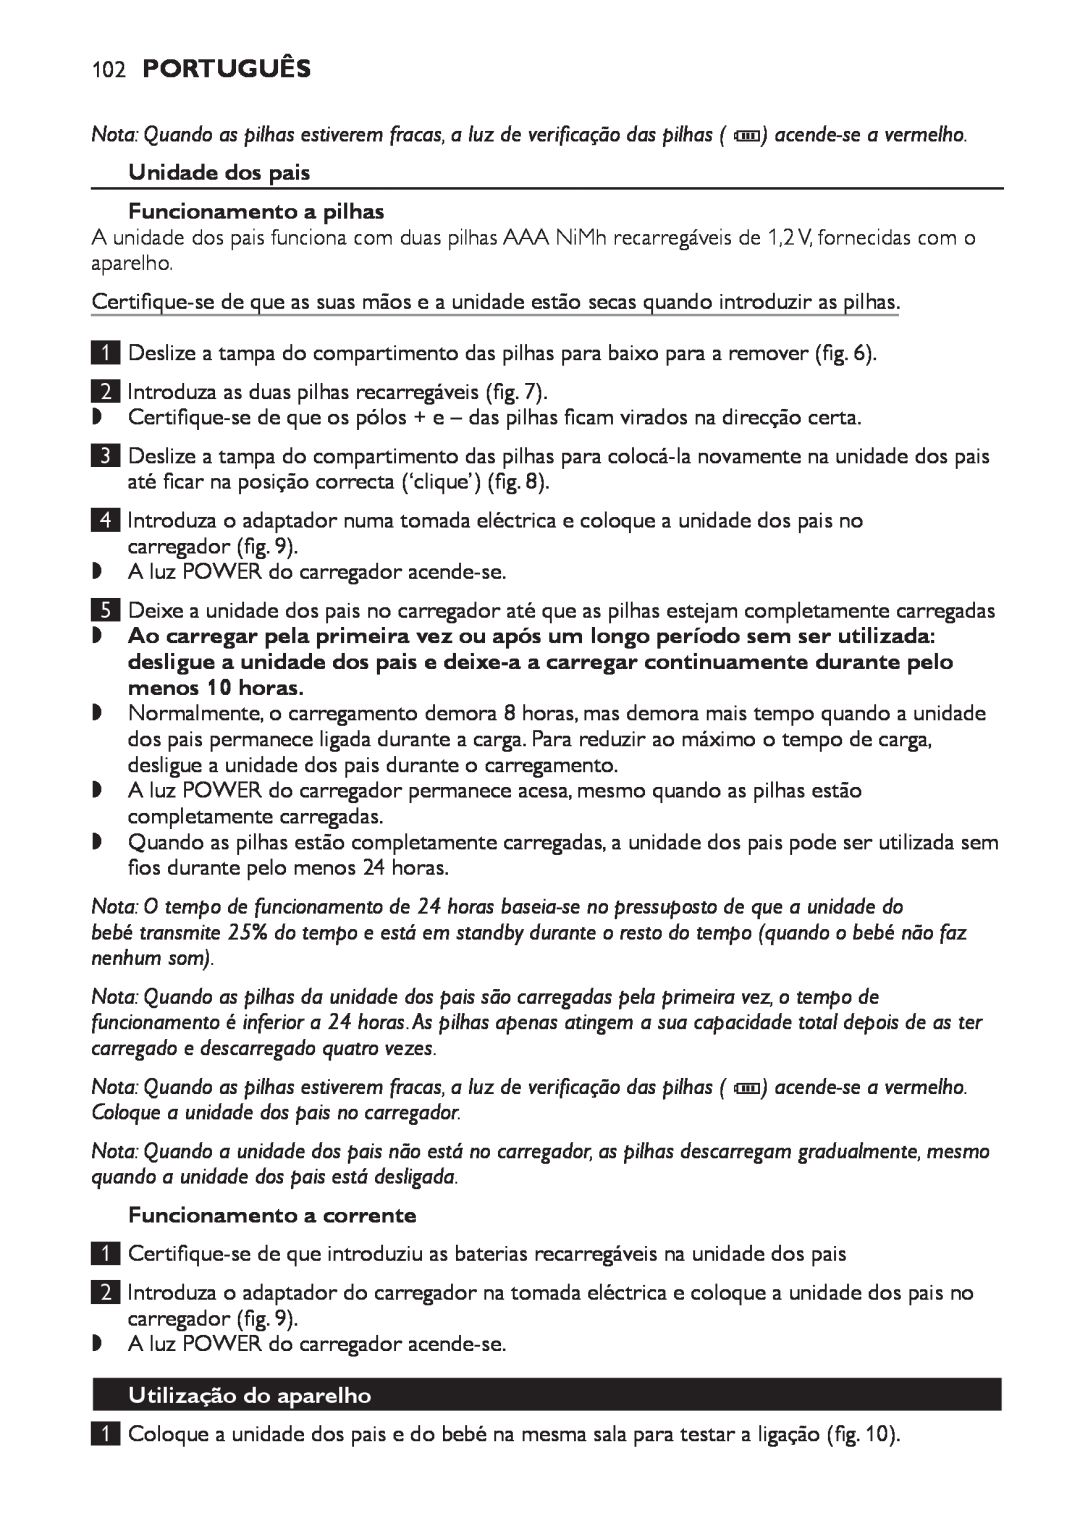 Philips SCD498 manual Português, Unidade dos pais Funcionamento a pilhas, Utilização do aparelho, Funcionamento a corrente 